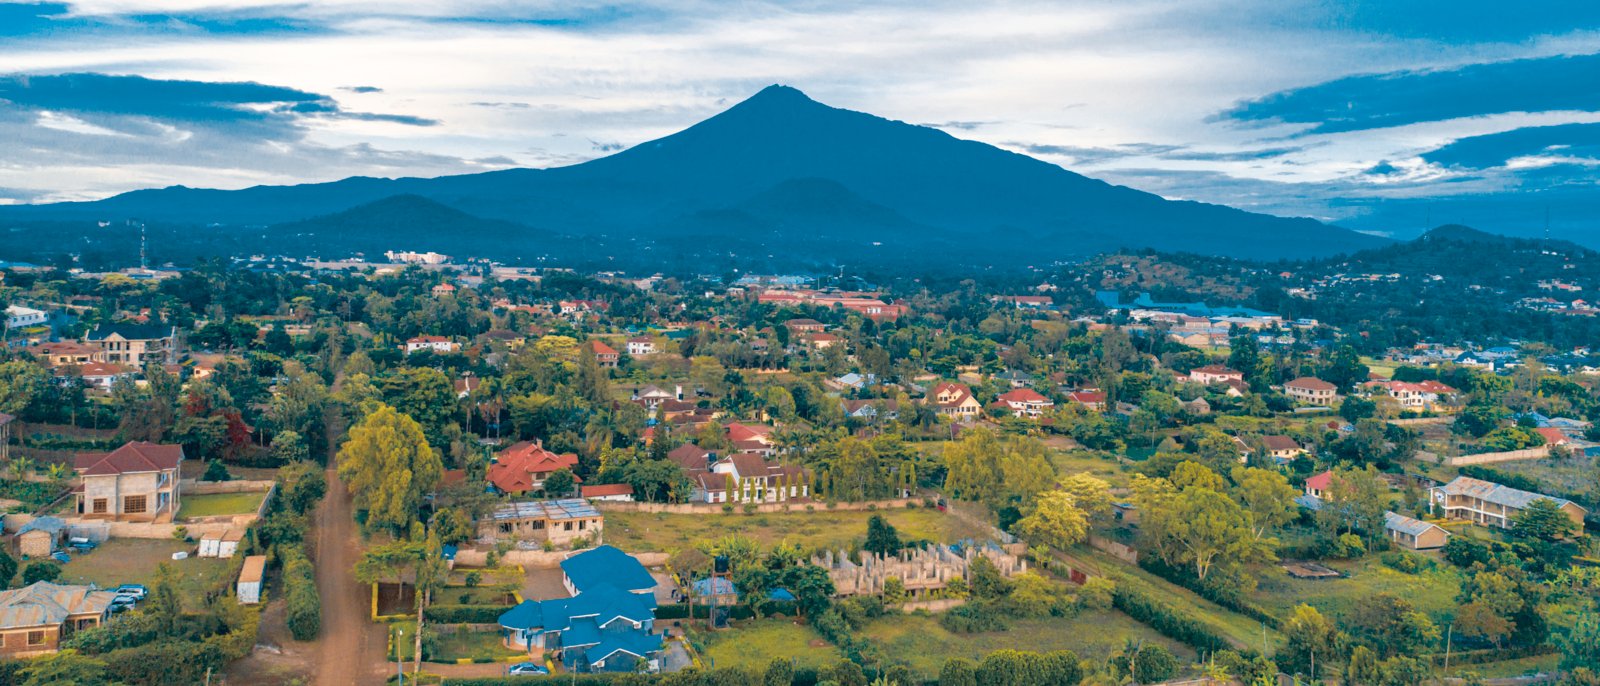 The landscape of Mount meru in Arusha, Tanzania